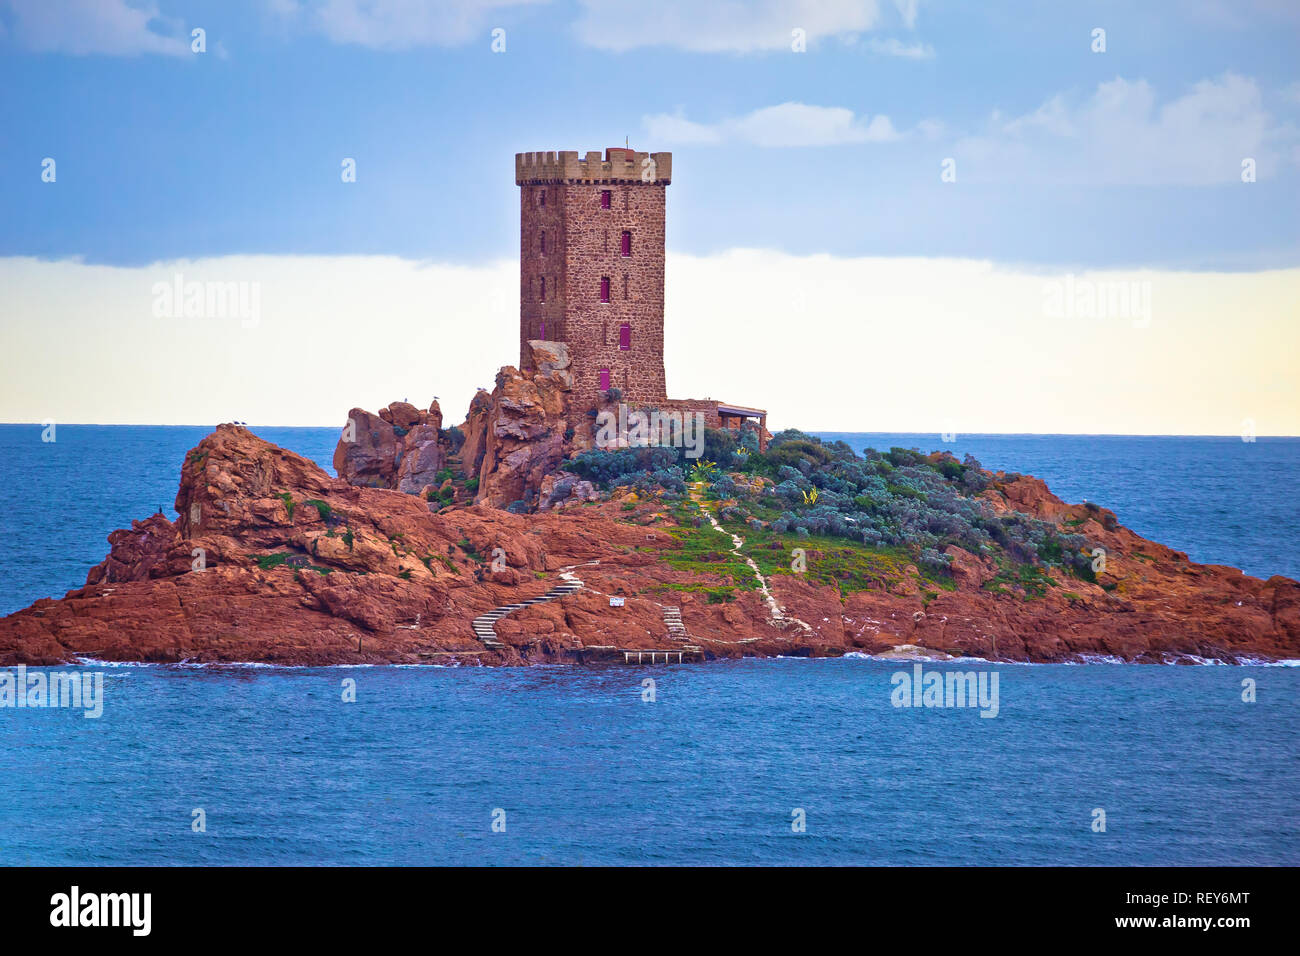 Ile d'o isola e la torre in Costa Azzurra arcipelago, Alpes-Maritimes regione della Francia Foto Stock